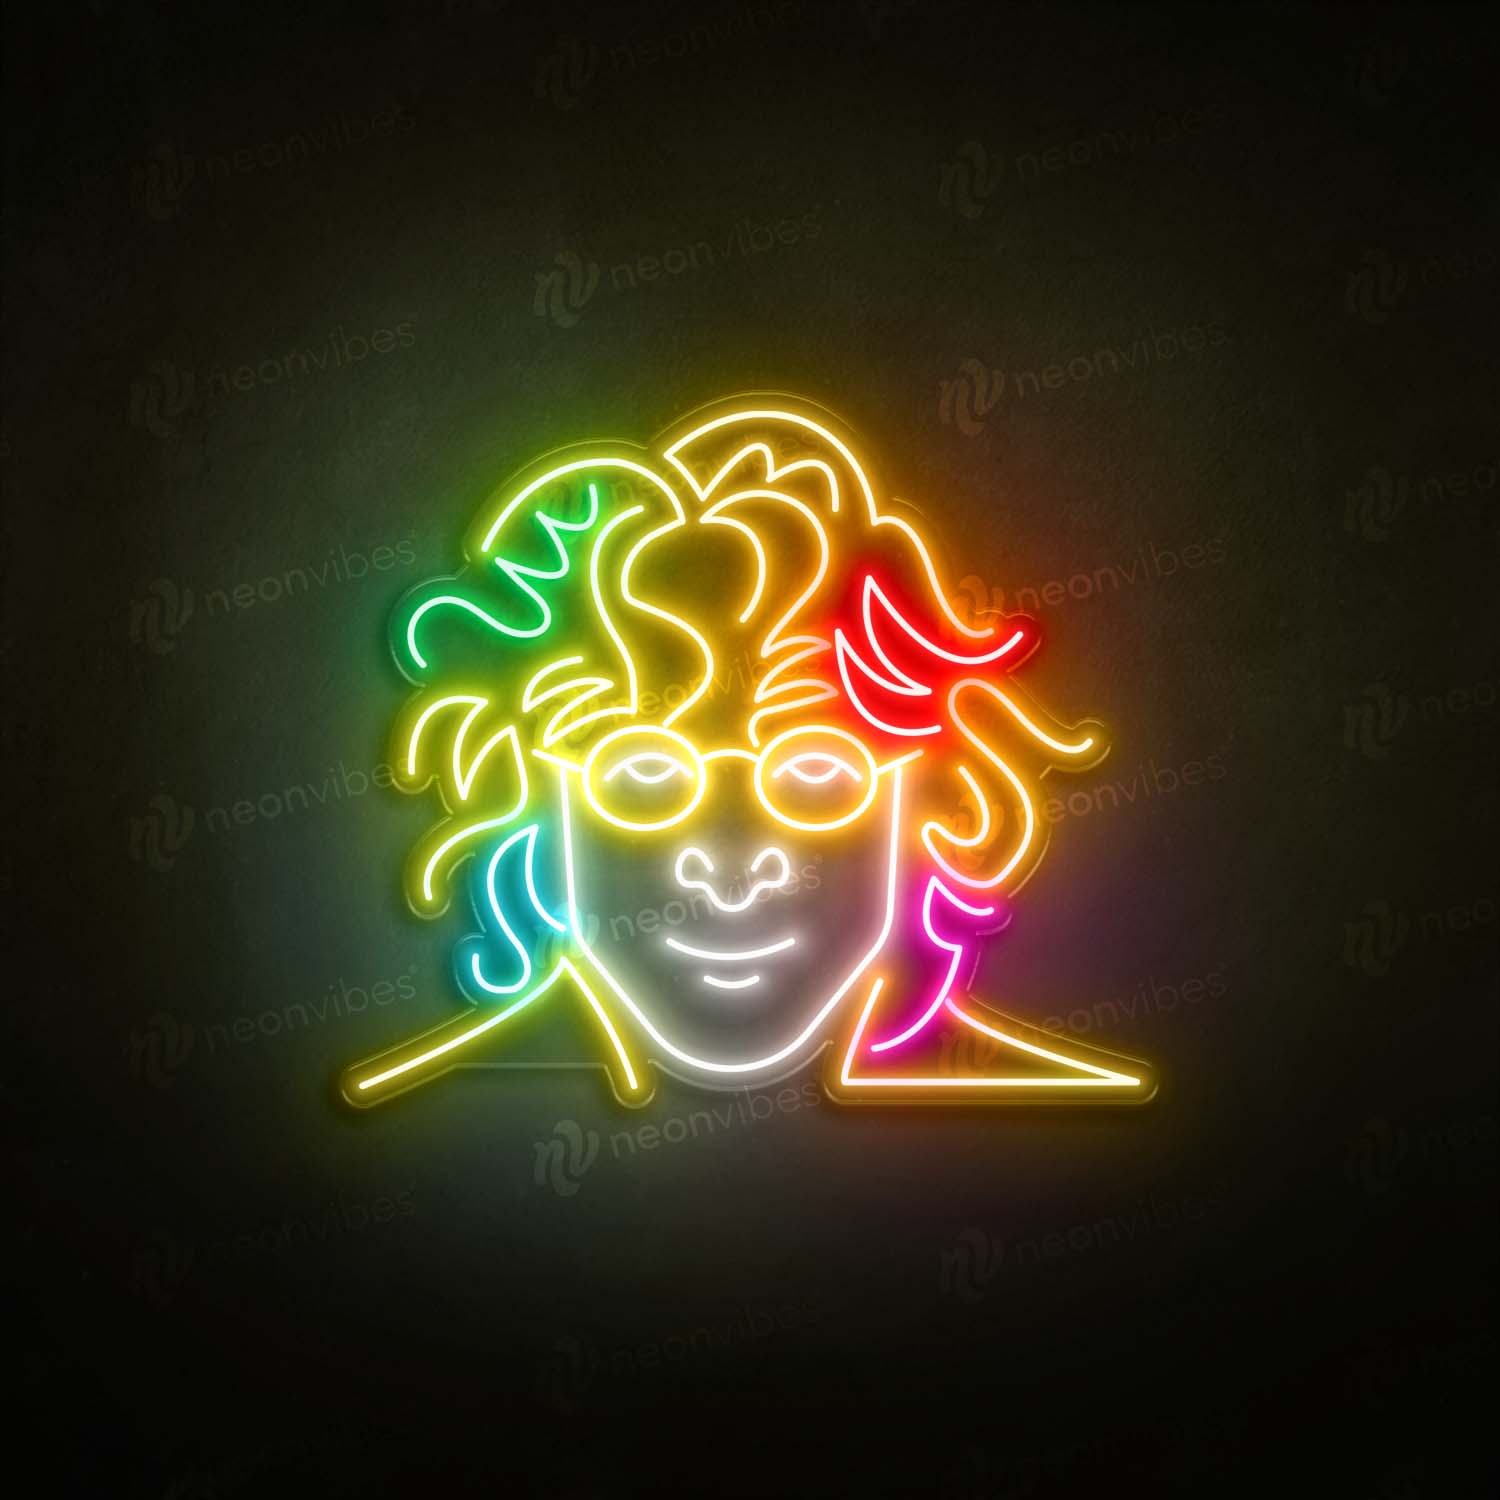 John Lennon neon sign